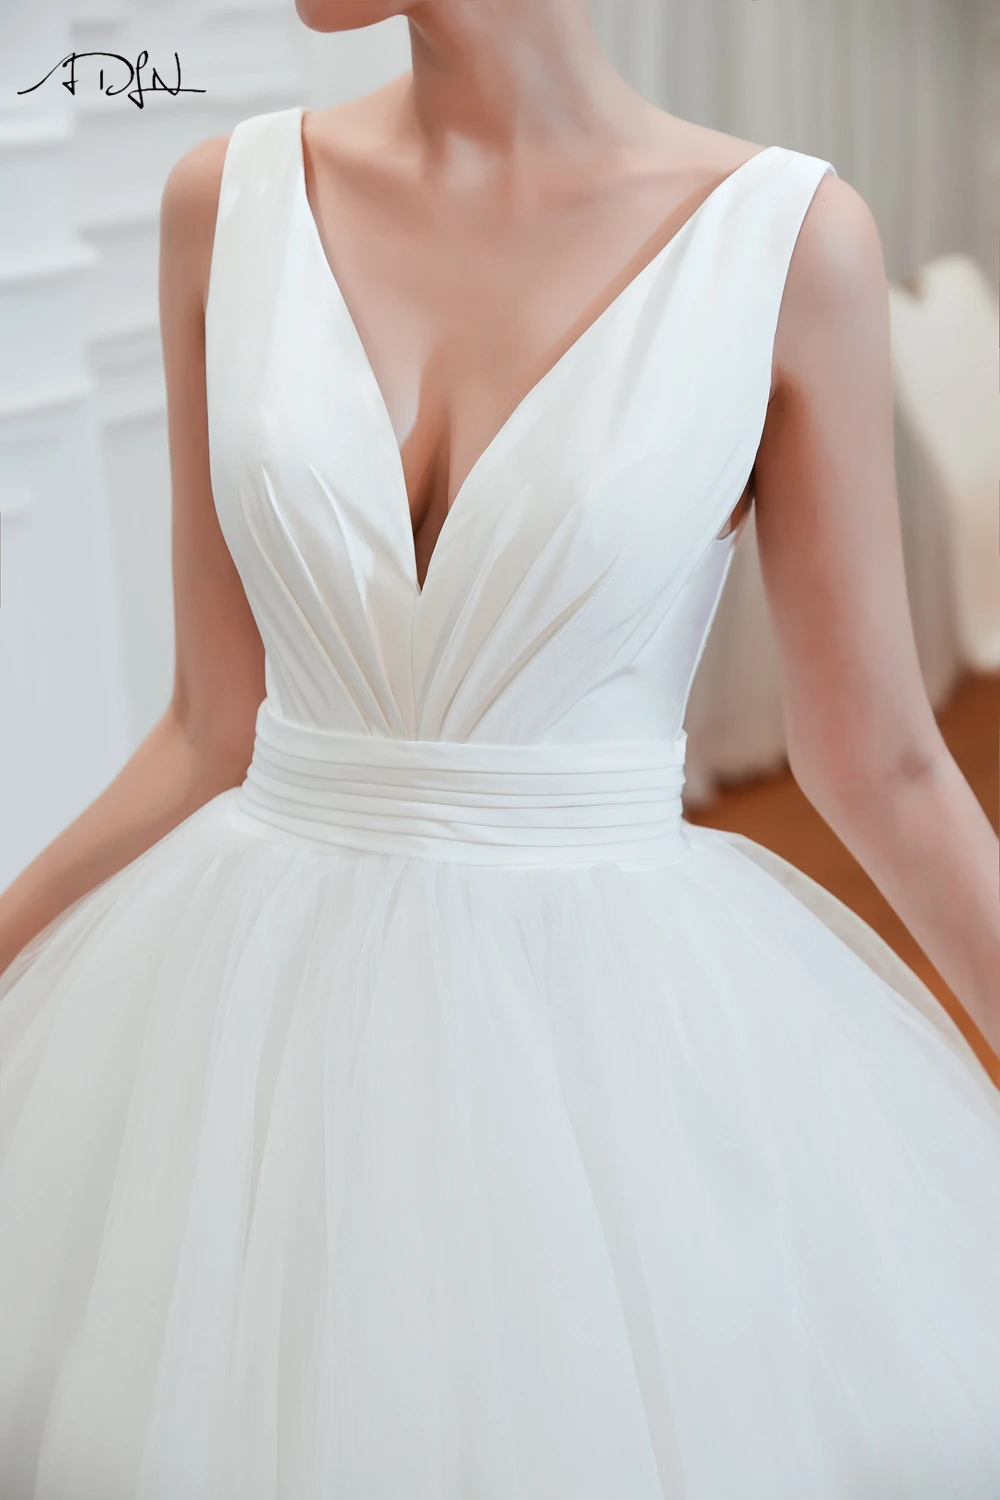 ADLN Простые Свадебные платья трапециевидной формы атласные свадебные платья с v-образным вырезом халат de Mariee шлейф мягкий тюль Принцесса белое платье невесты